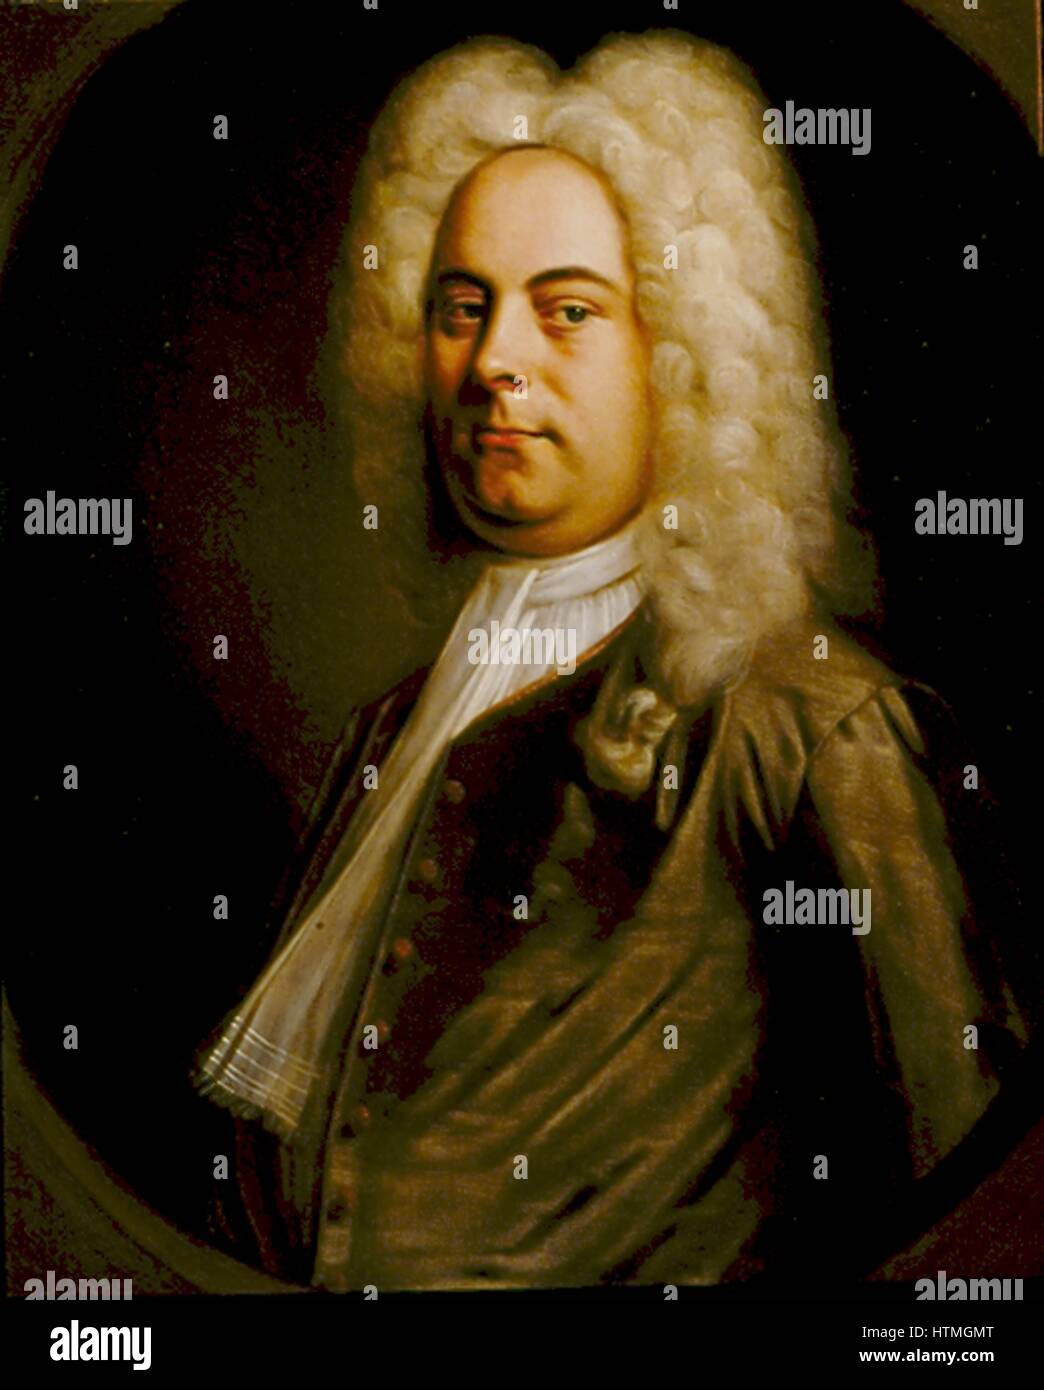 George Frederic Handel (1685-1759), compositor nacido en Alemania que se asentaron en Inglaterra. Retrato de 1726-1728 atribuido a Baltasar Denner (1726-1749). Óleo sobre lienzo. Foto de stock